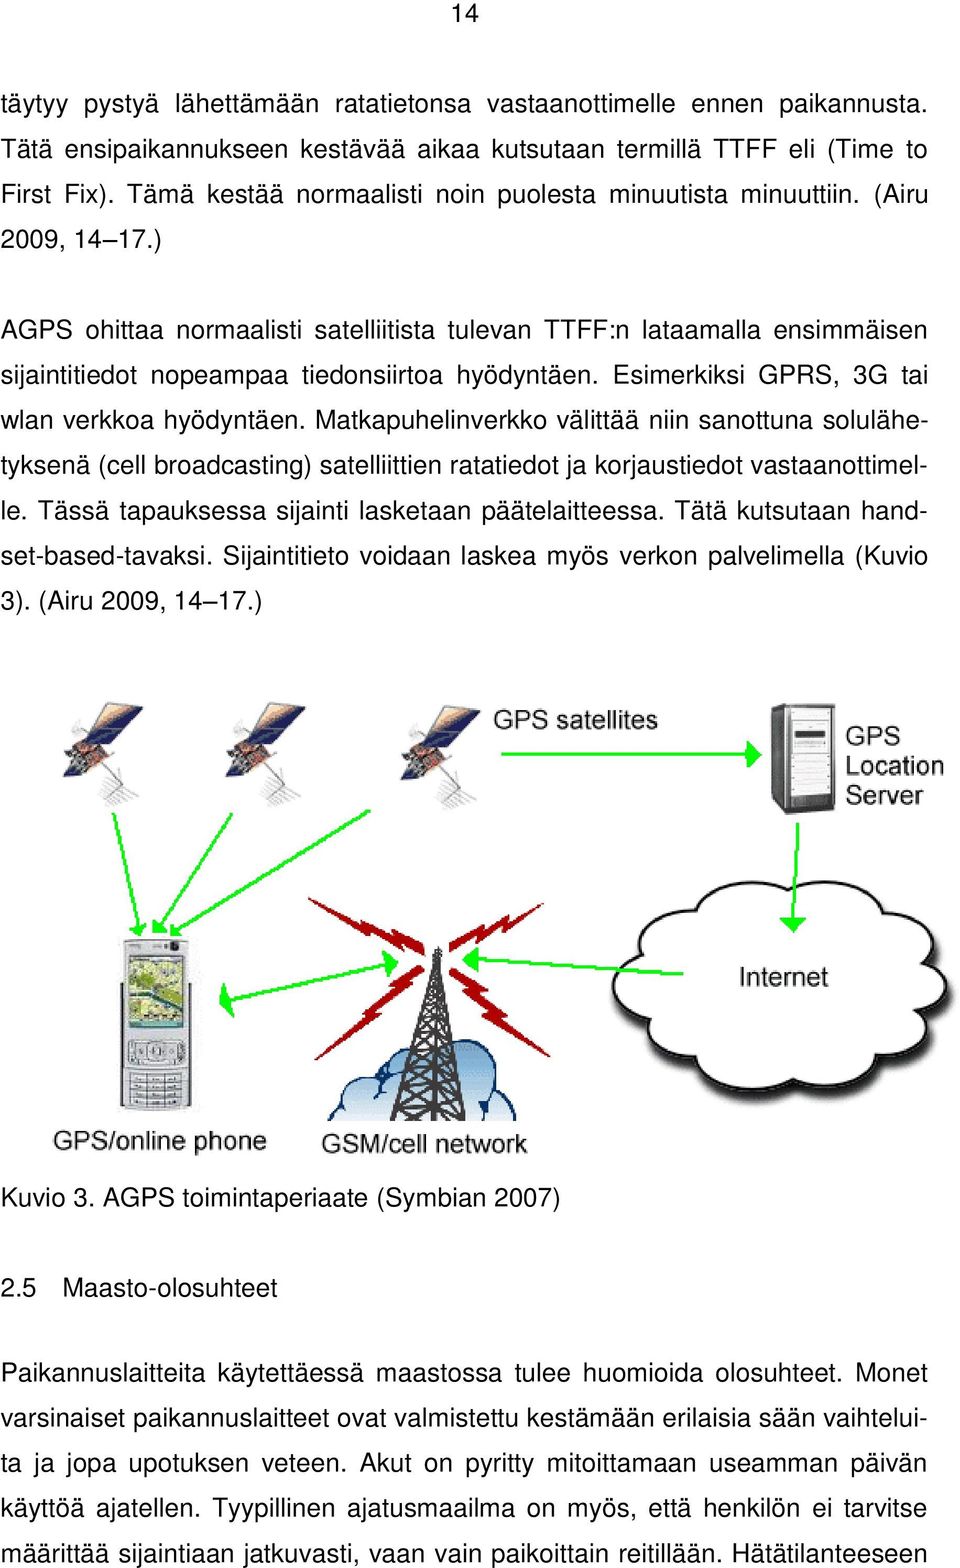 ) AGPS ohittaa normaalisti satelliitista tulevan TTFF:n lataamalla ensimmäisen sijaintitiedot nopeampaa tiedonsiirtoa hyödyntäen. Esimerkiksi GPRS, 3G tai wlan verkkoa hyödyntäen.